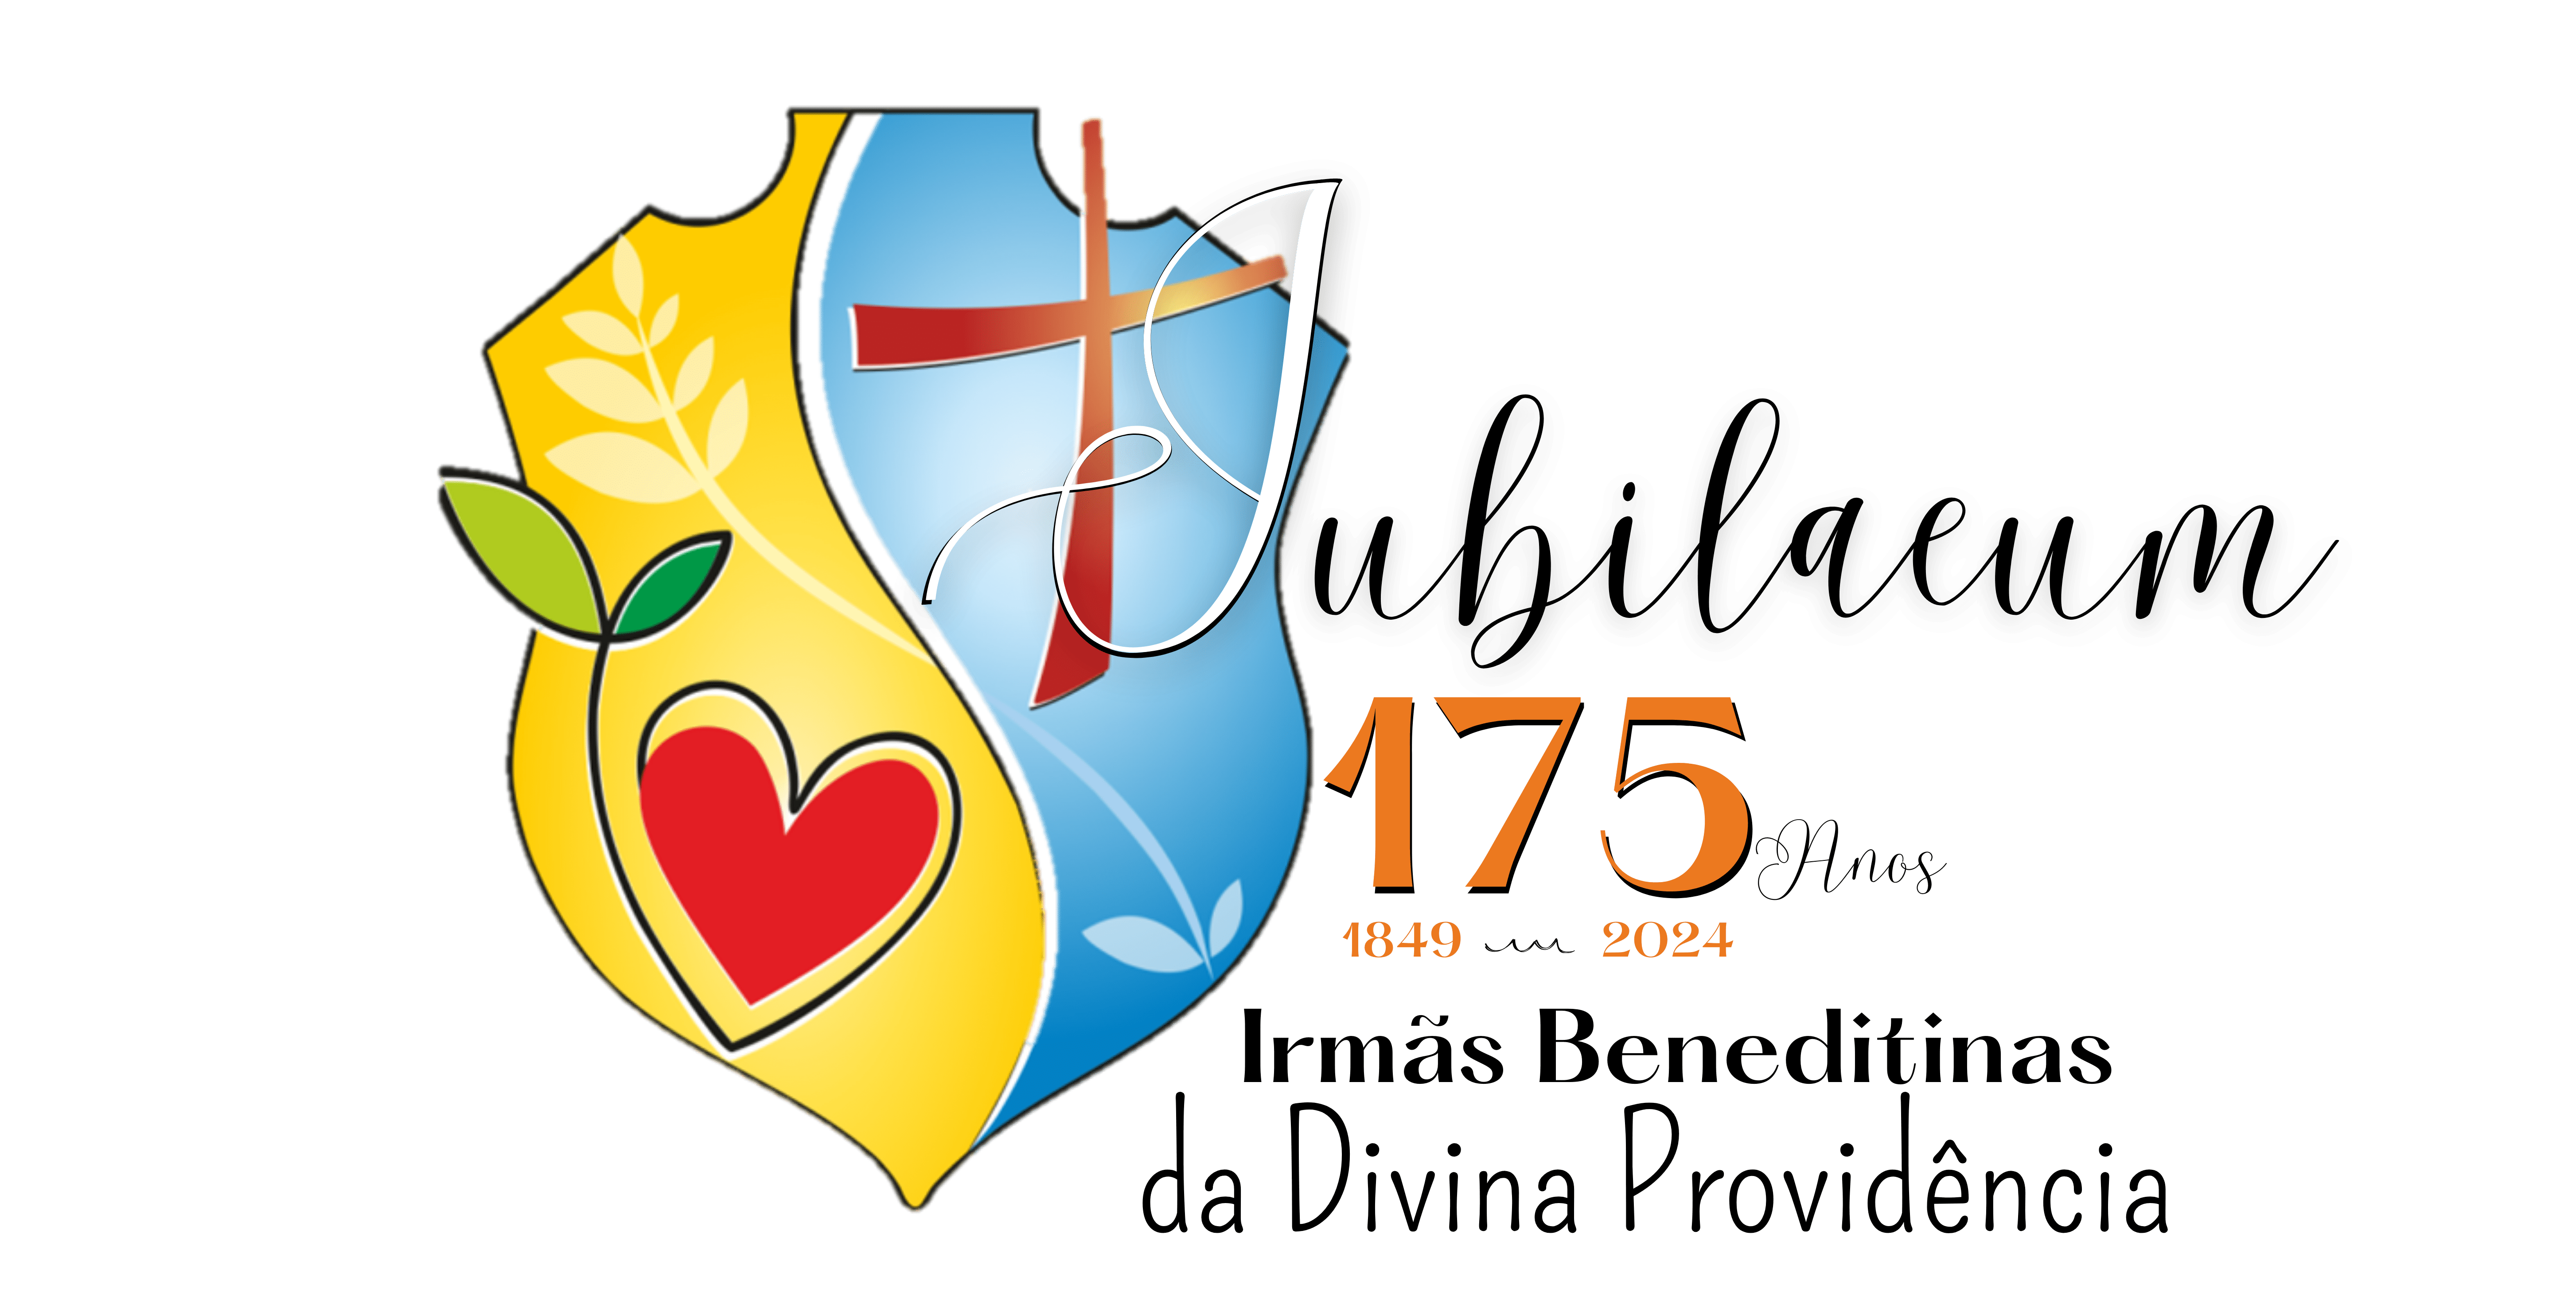 A Congregação celebrará seu 175º aniversário de vida